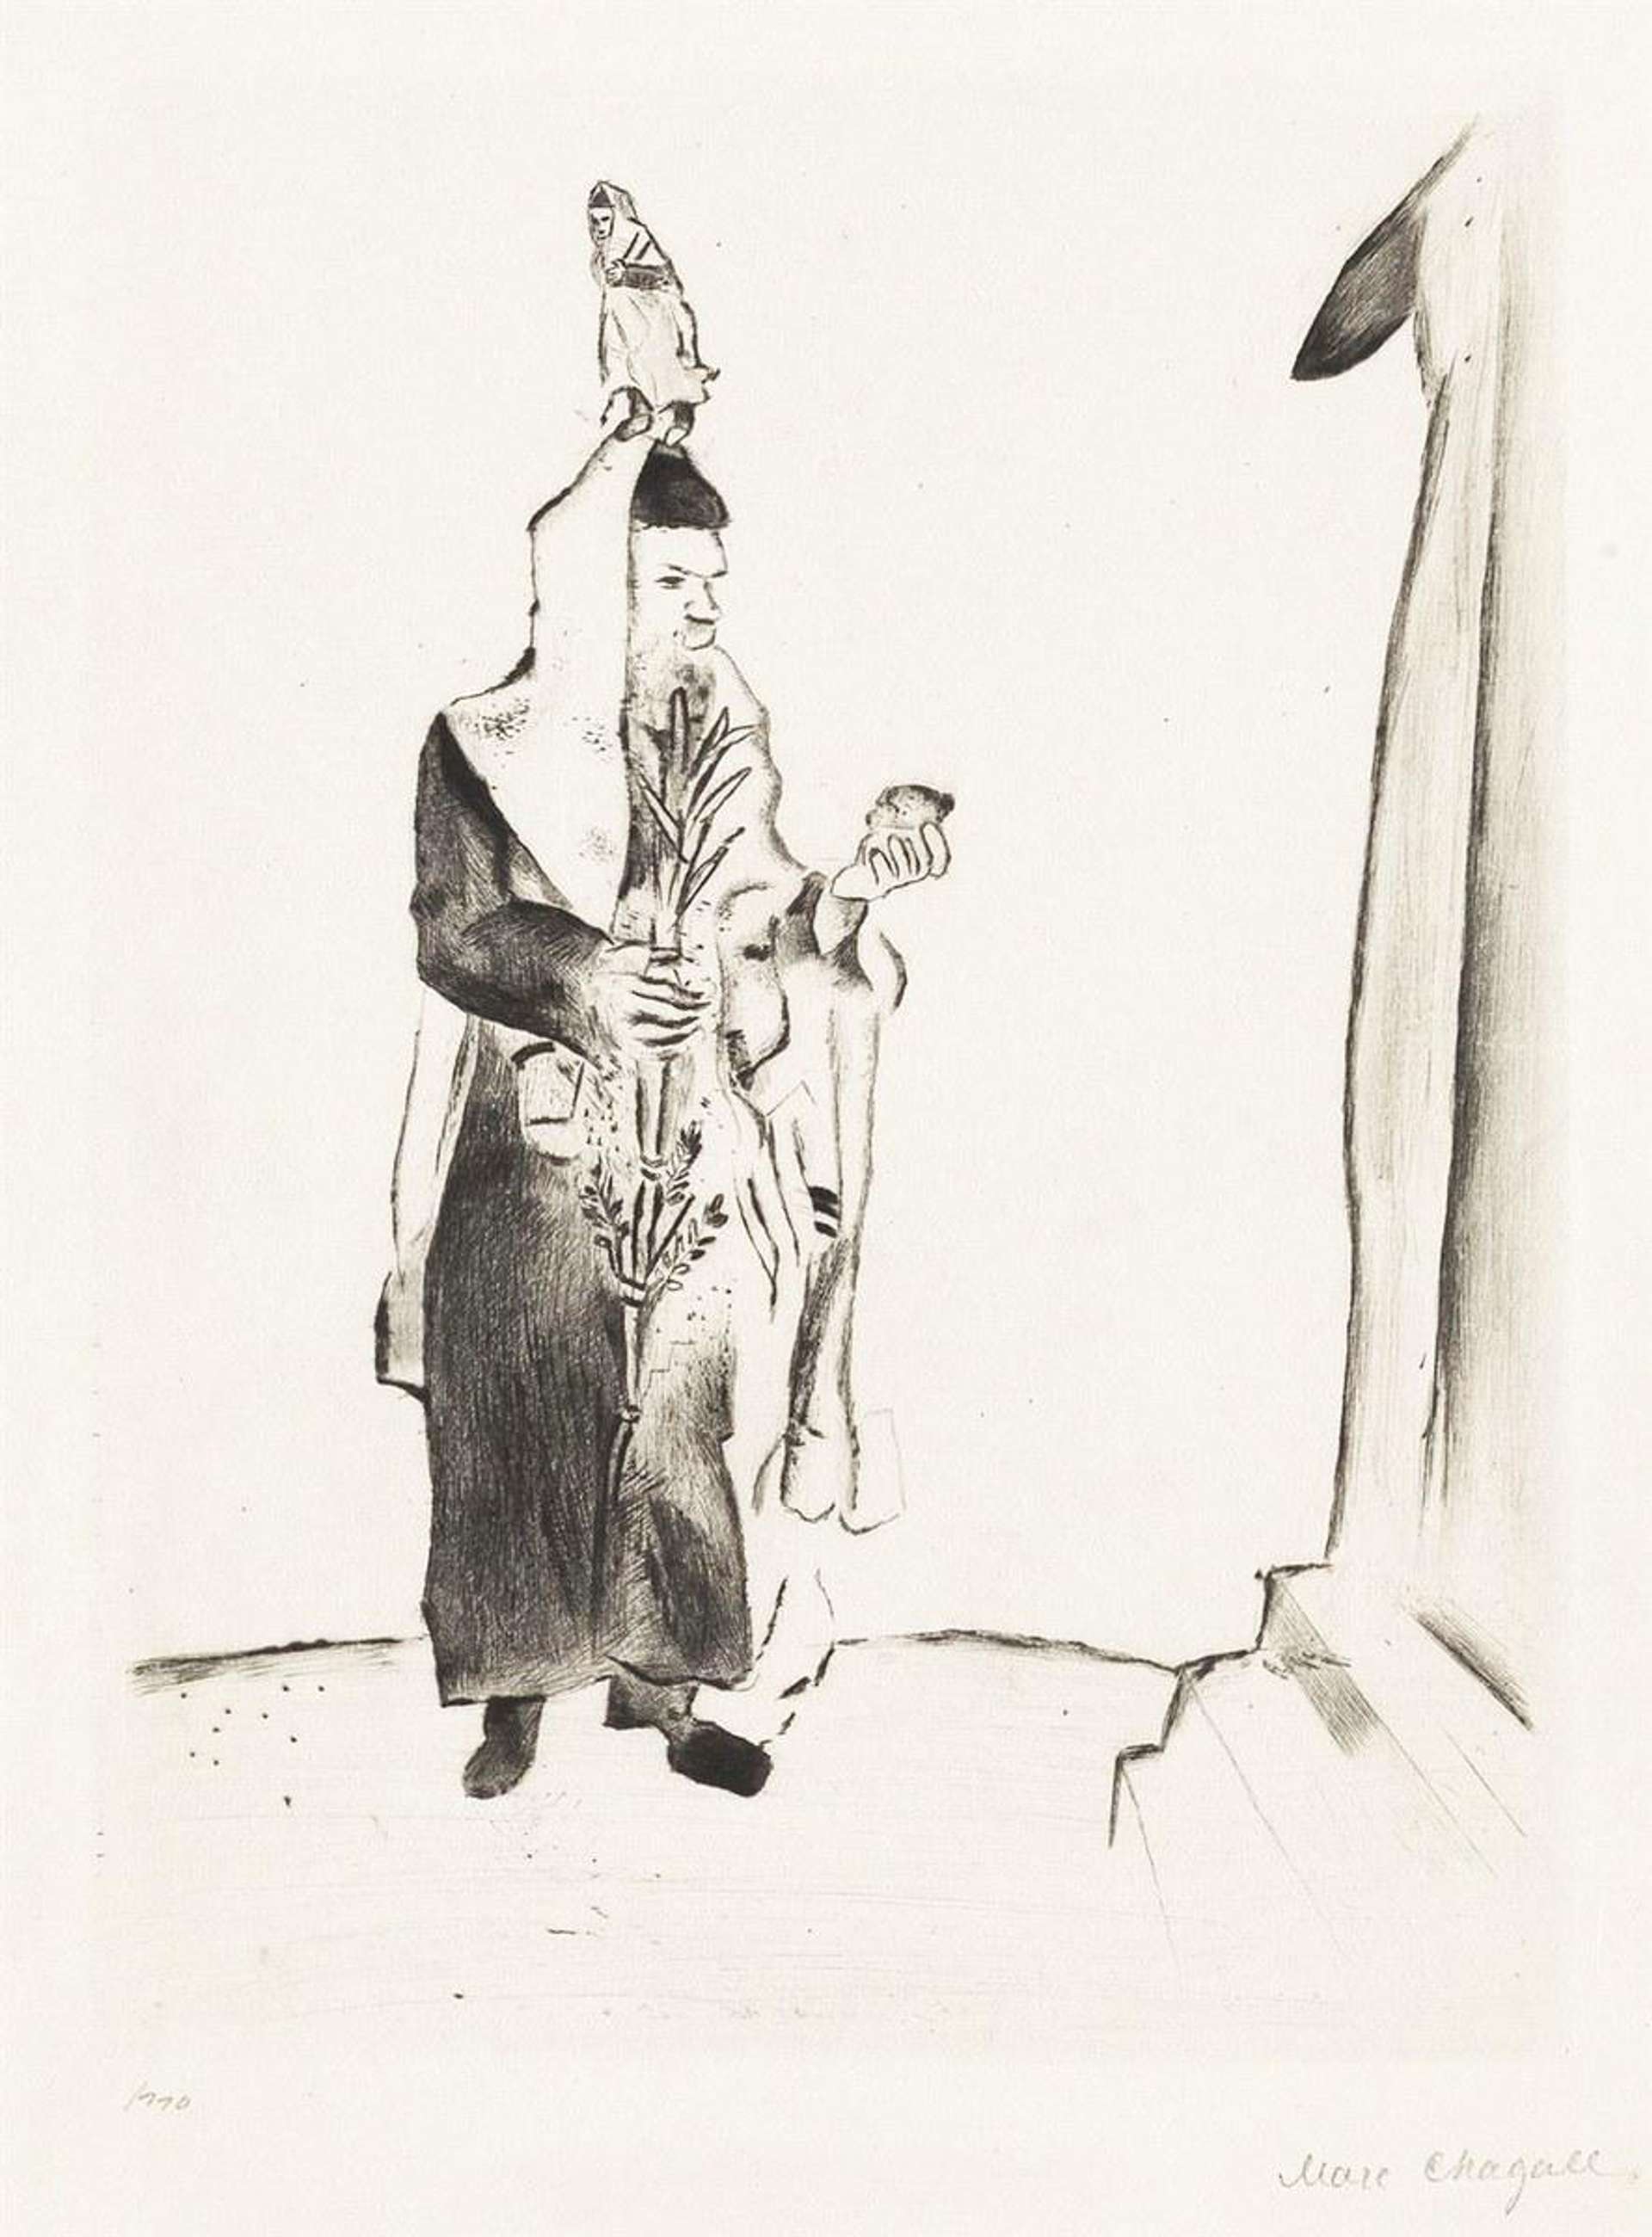 Marc Chagall: The Rabbi - Signed Mixed Media